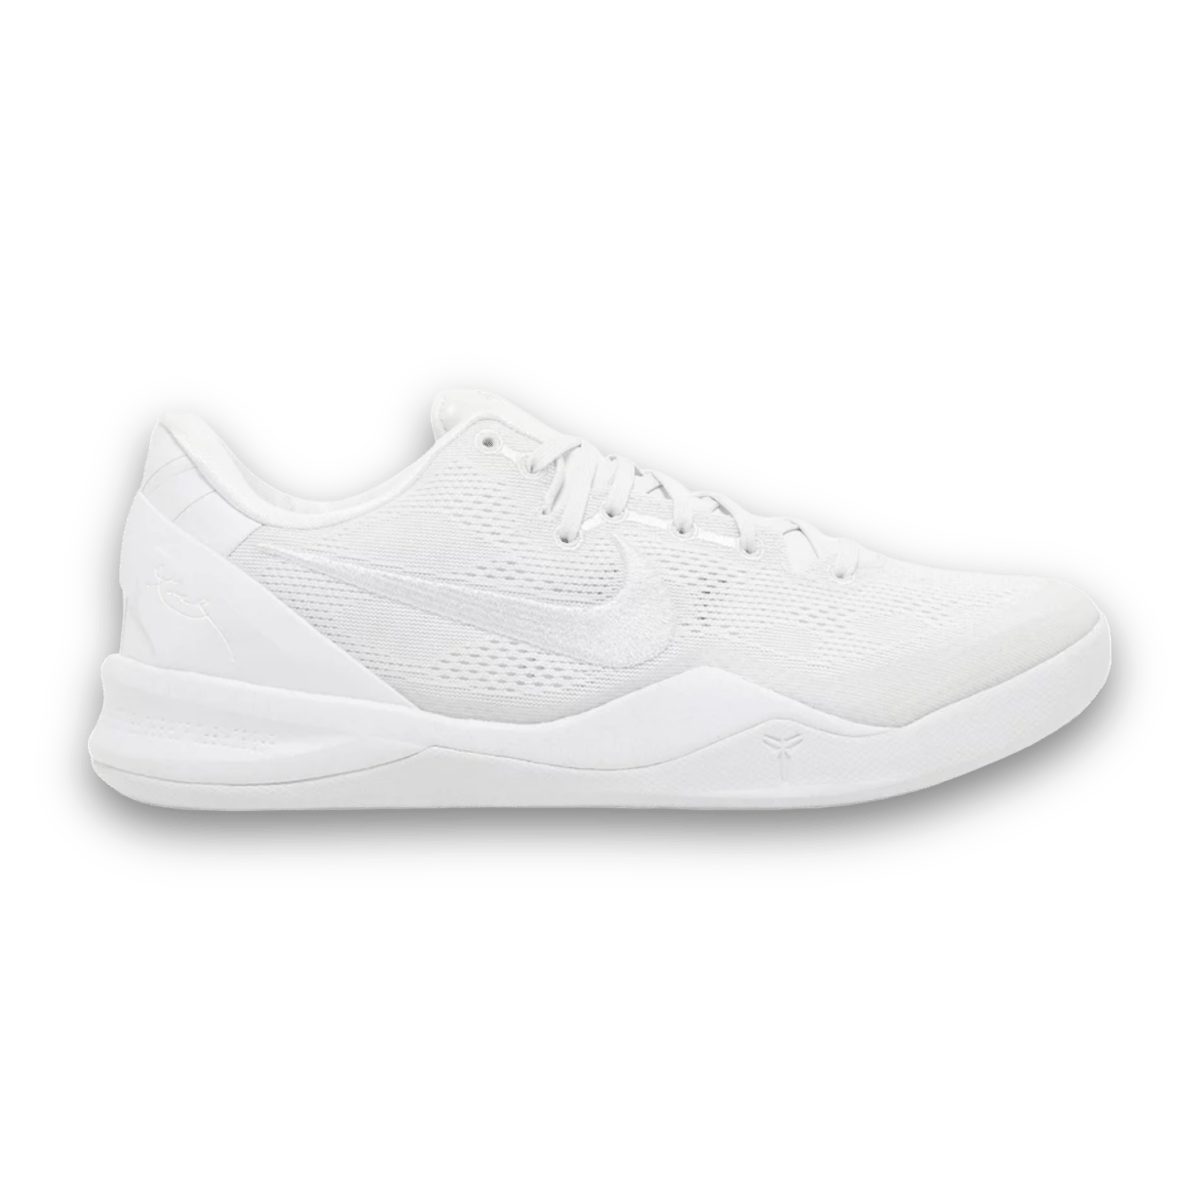 Kobe 8 Protro 'Halo' White - Low Sneaker - Jawns on Fire Sneakers & Streetwear